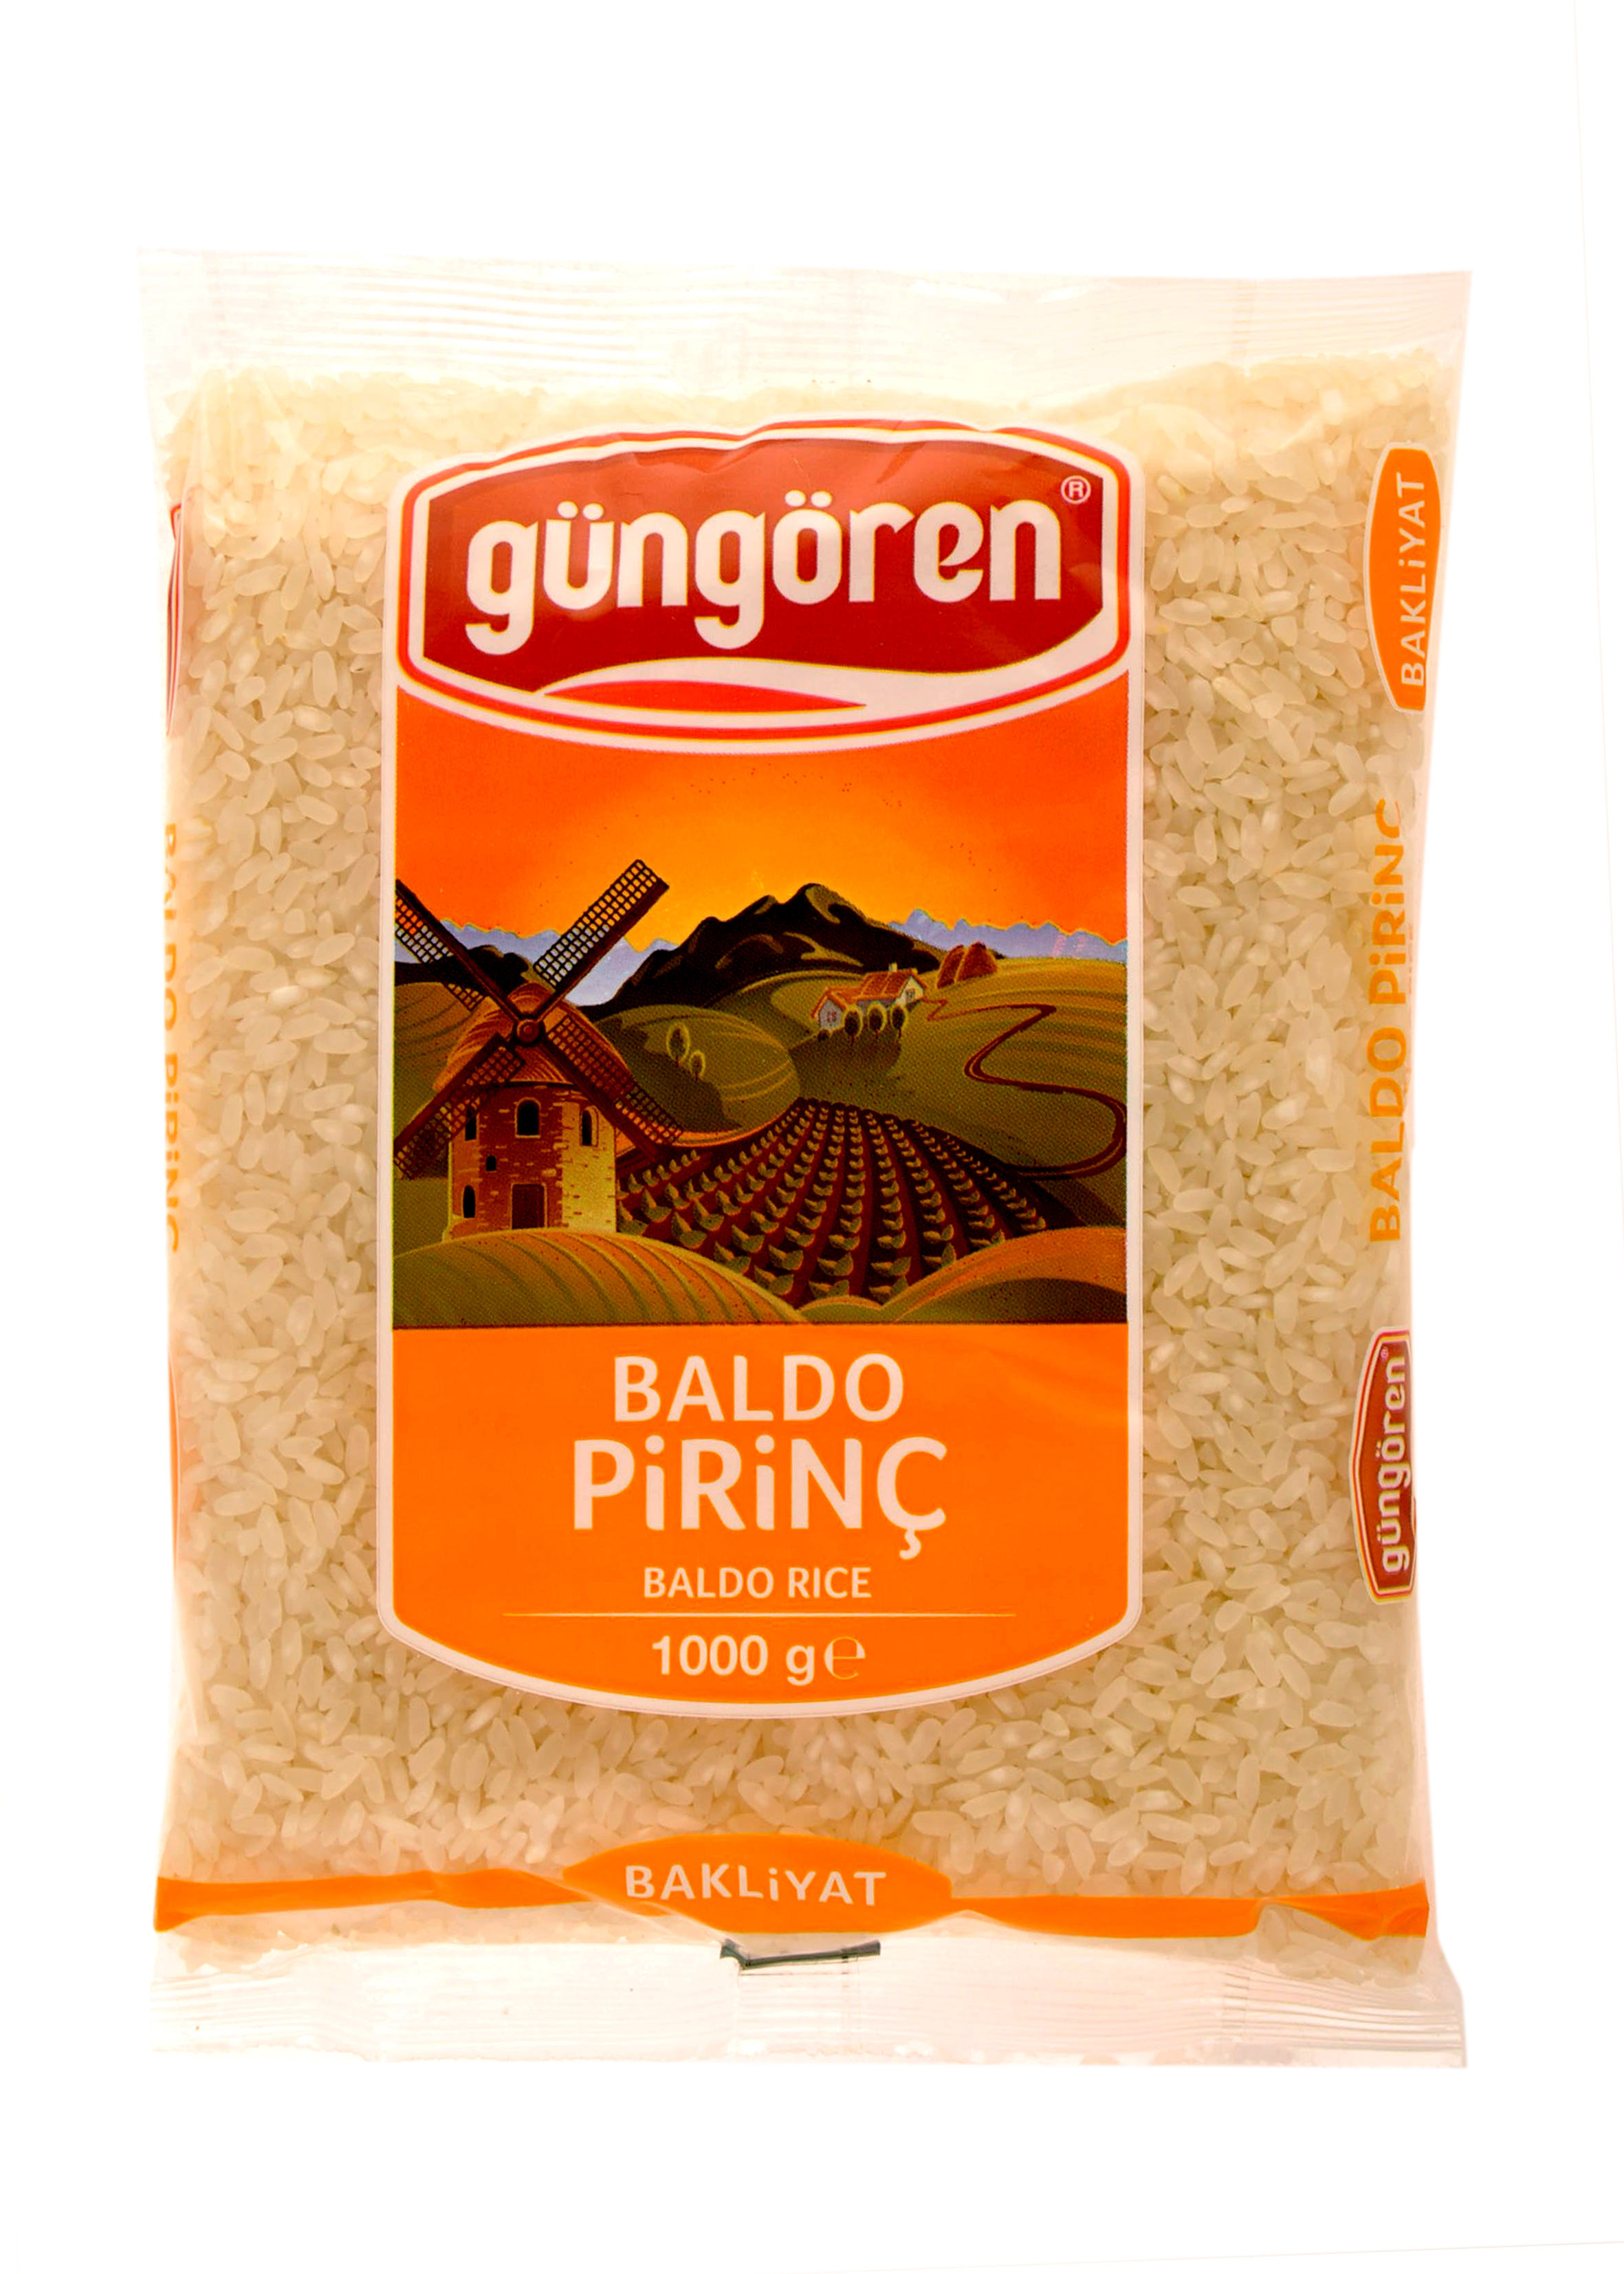 Baldo Pirincin Faydaları